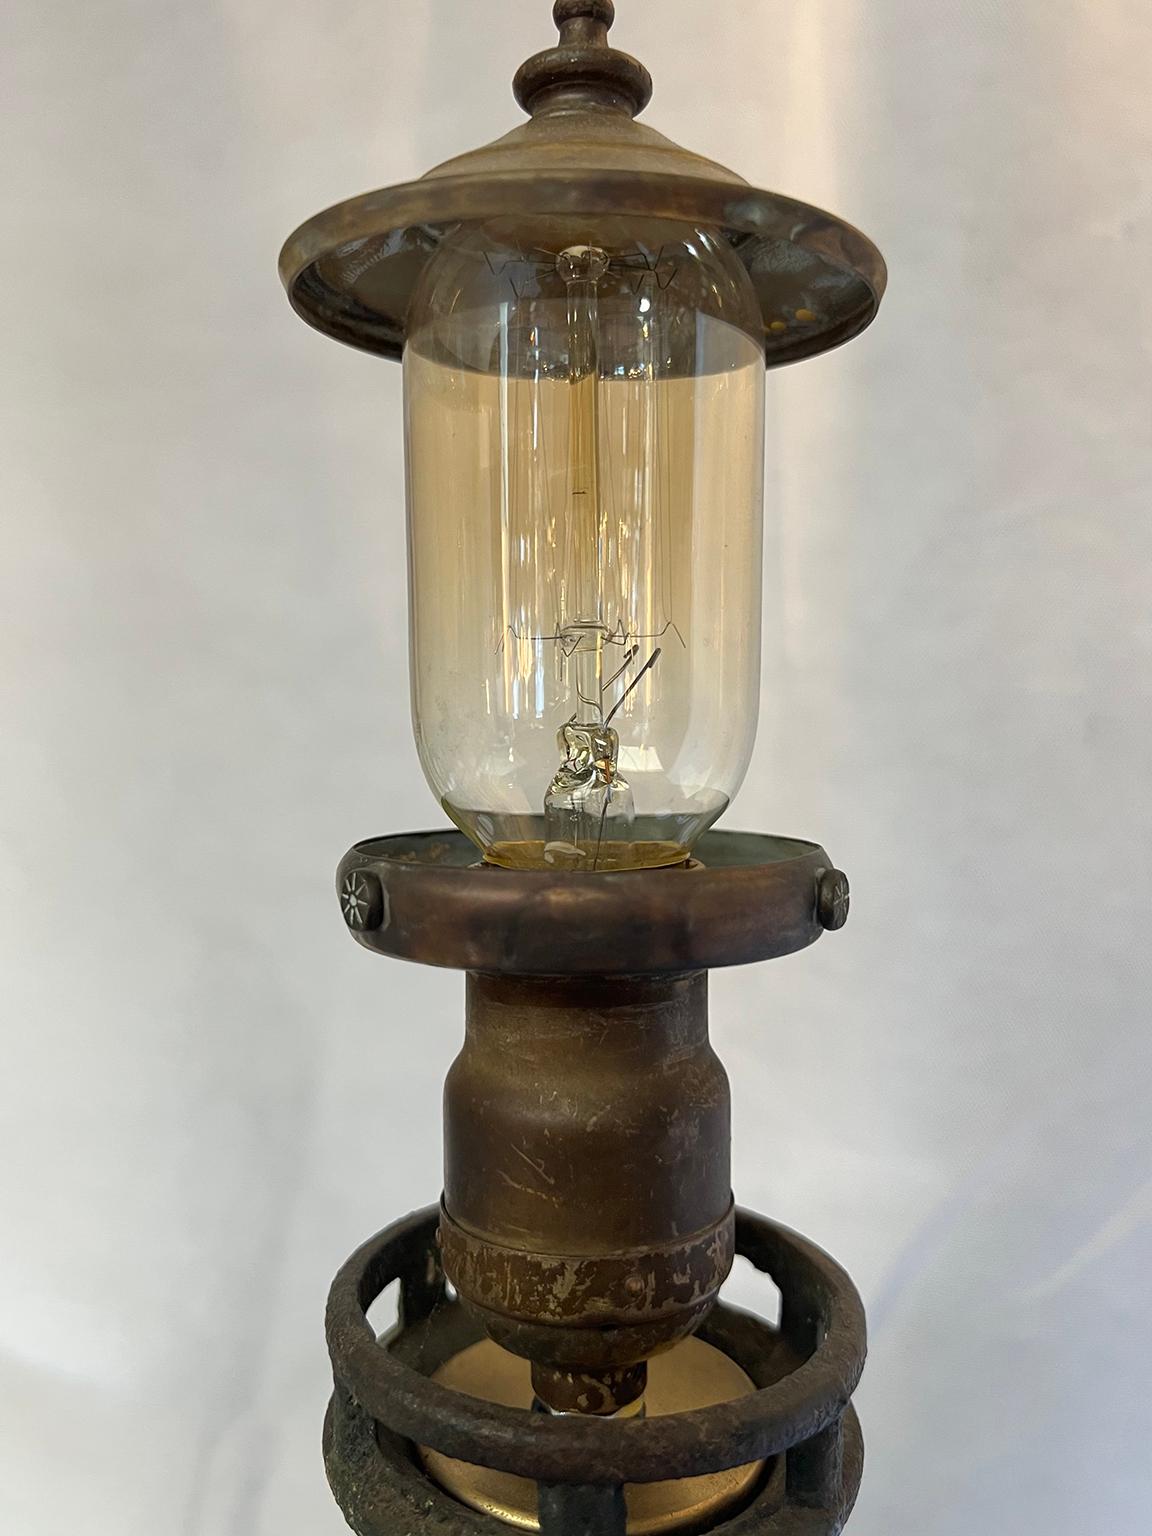 Restored, Vintage, Cast, Lighthouse Desk Lamp 1